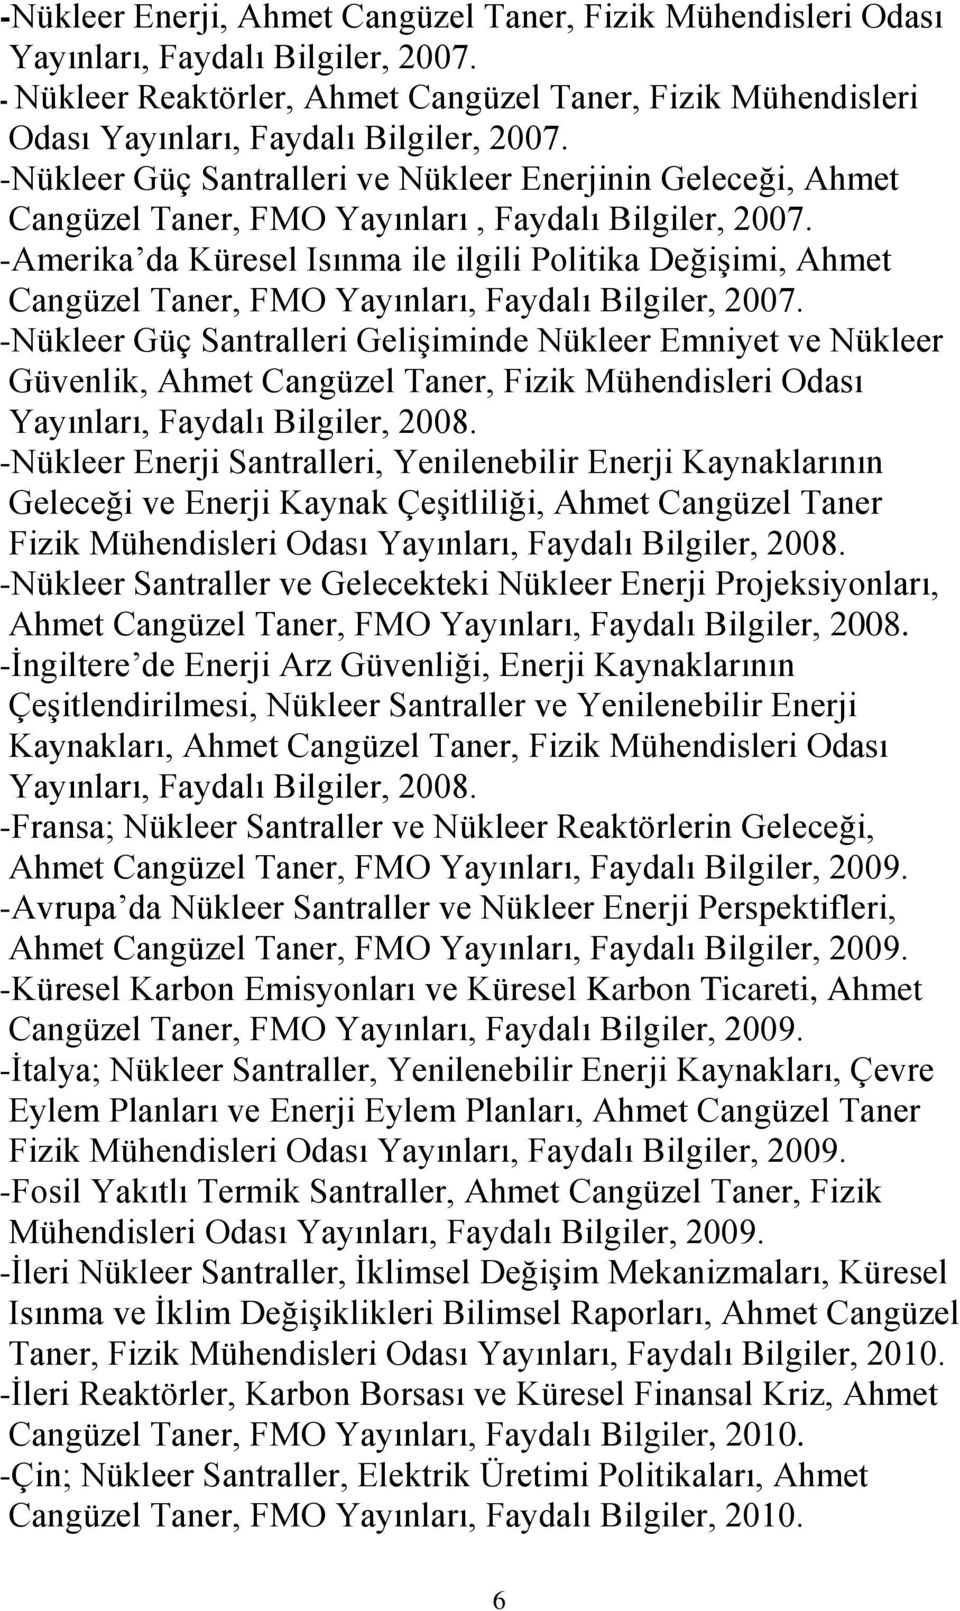 -Nükleer Güç Santralleri ve Nükleer Enerjinin Geleceği, Ahmet Cangüzel Taner, FMO Yayınları, Faydalı Bilgiler, 2007.